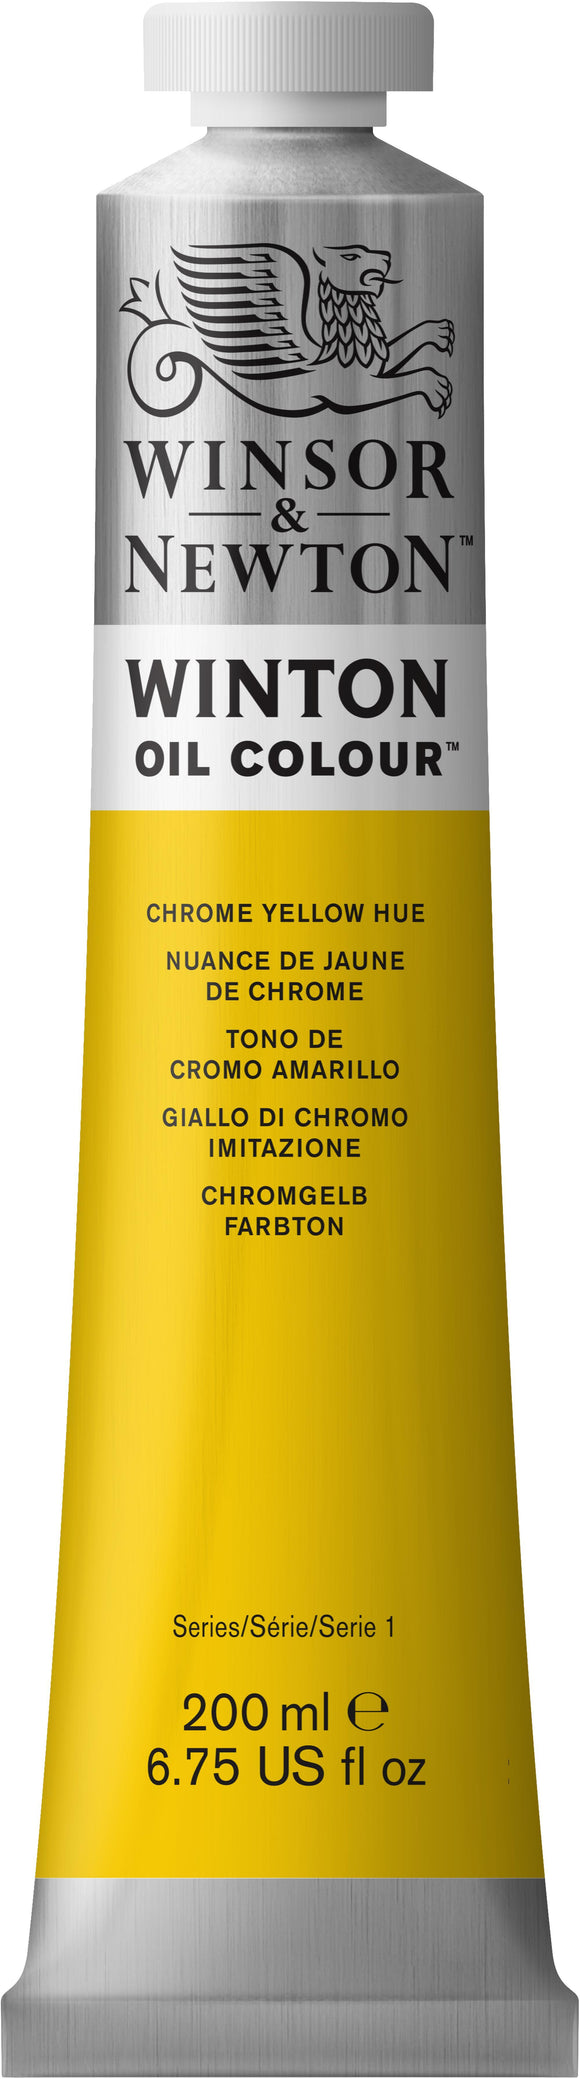 Winsor & Newton Winton Oil Colour Chrome Yellow 200Ml